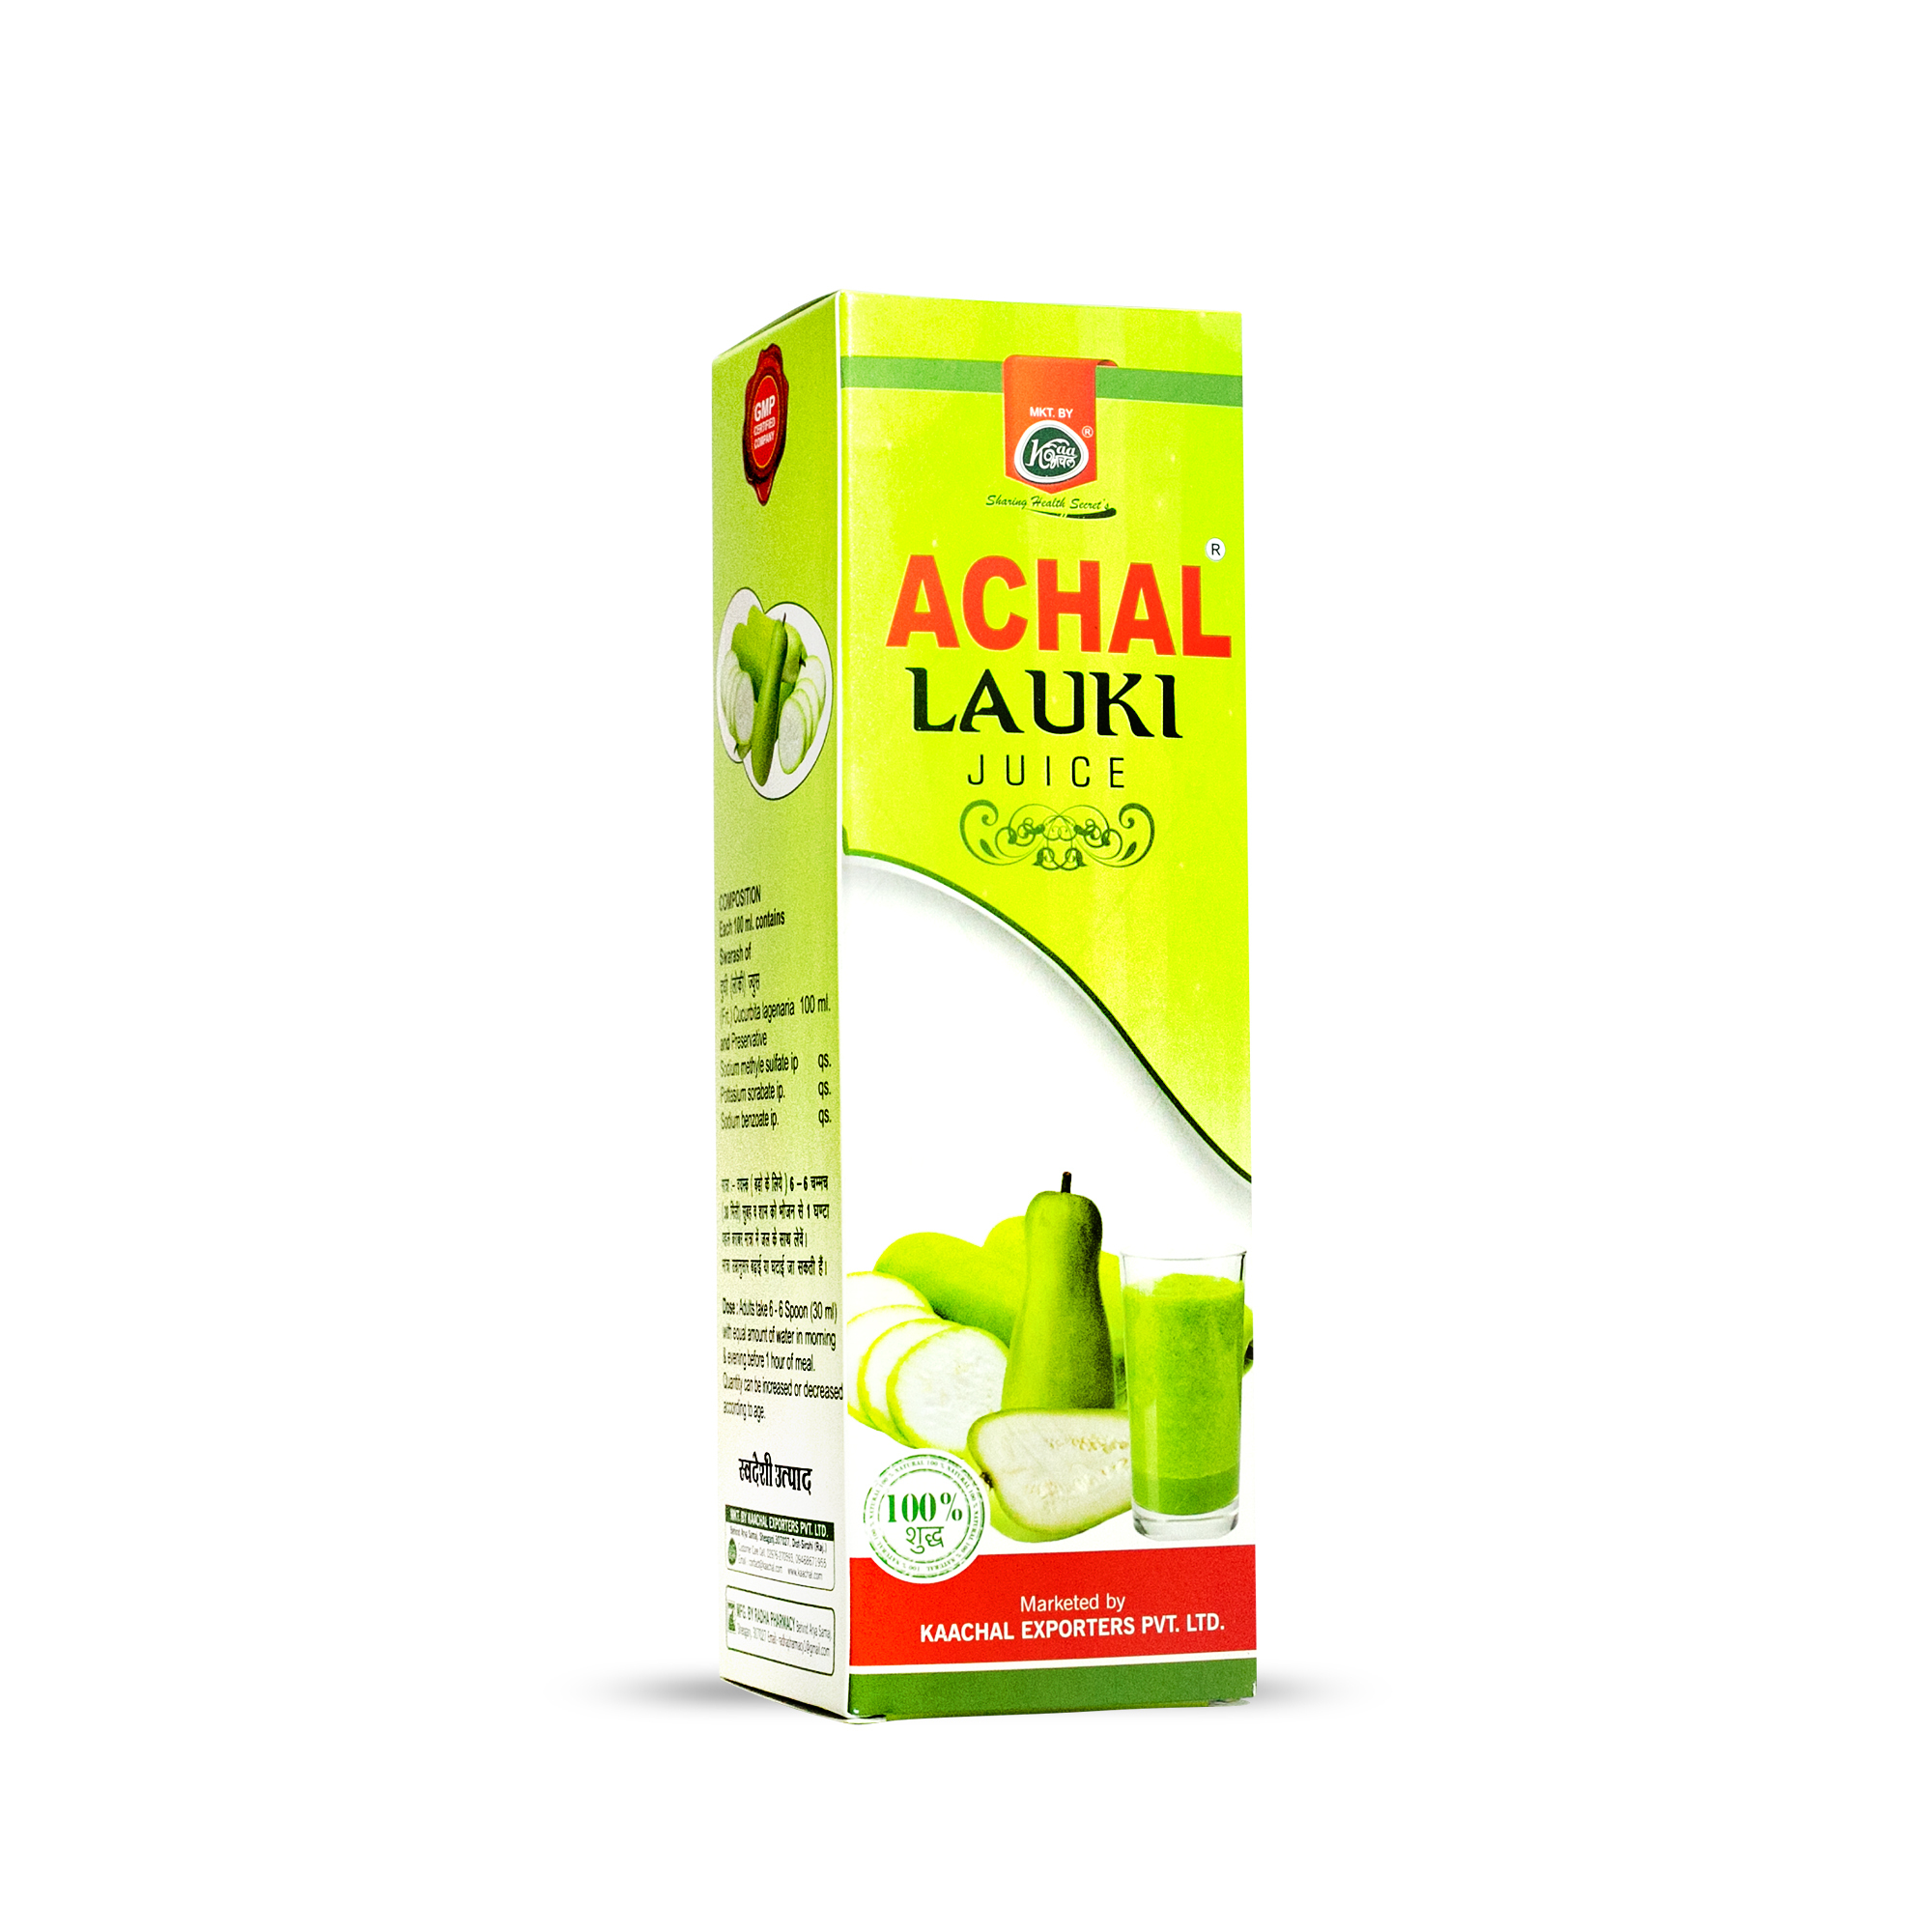 Achal Lauki Juice